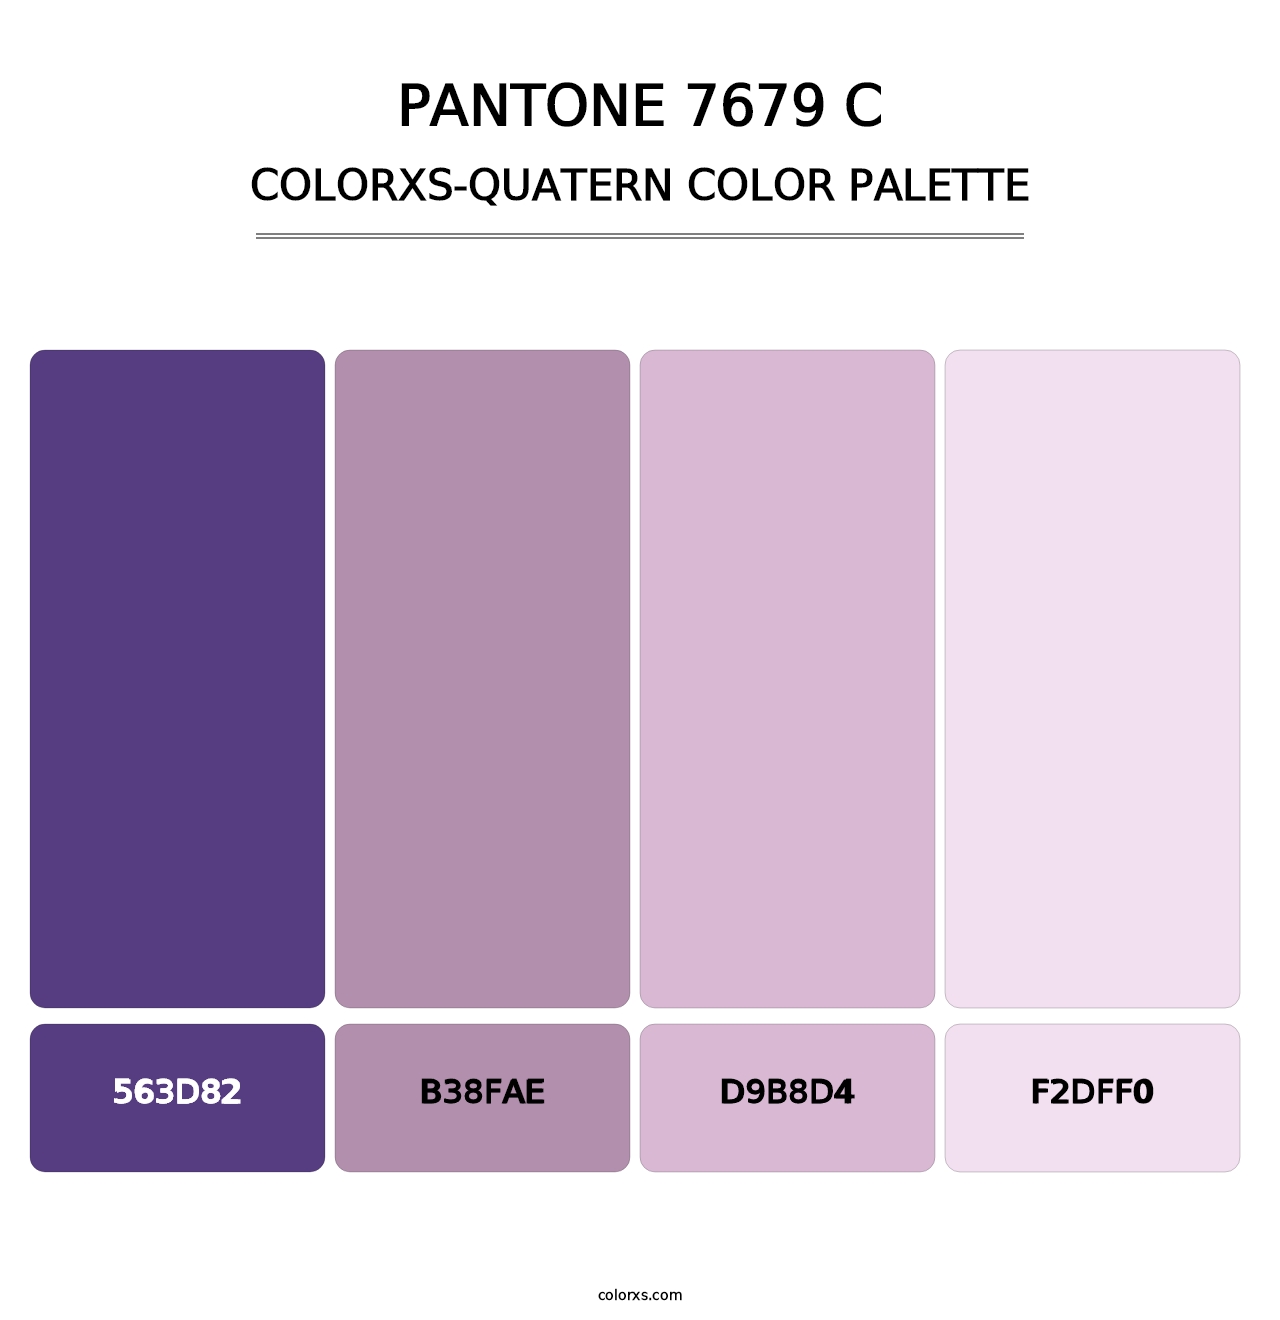 PANTONE 7679 C - Colorxs Quatern Palette